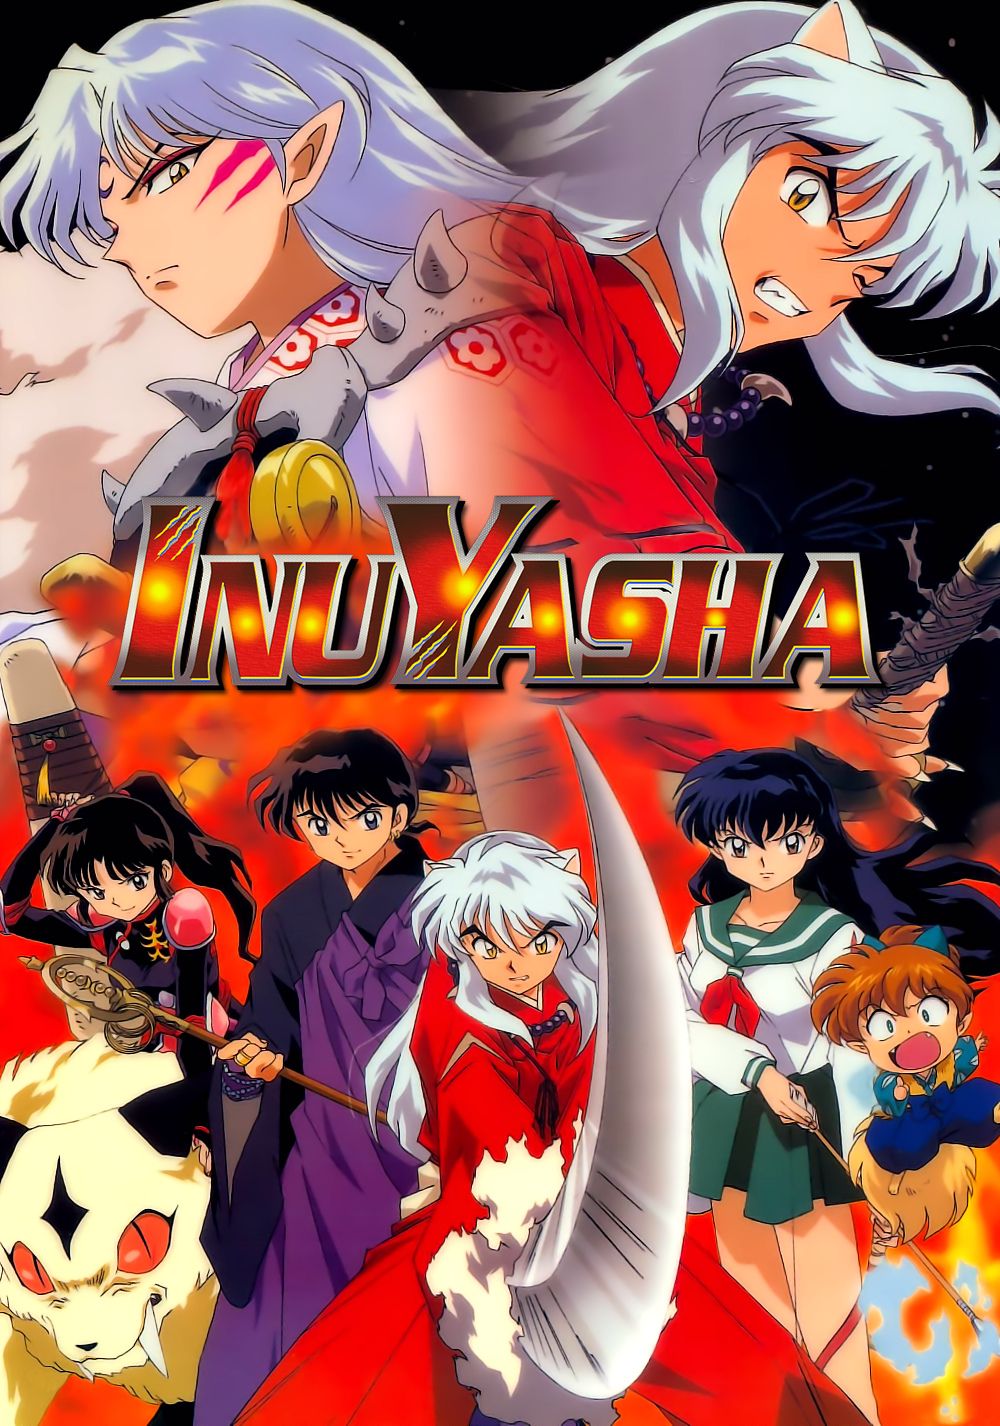 Elenco de Inuyasha posando en el poster oficial del anime